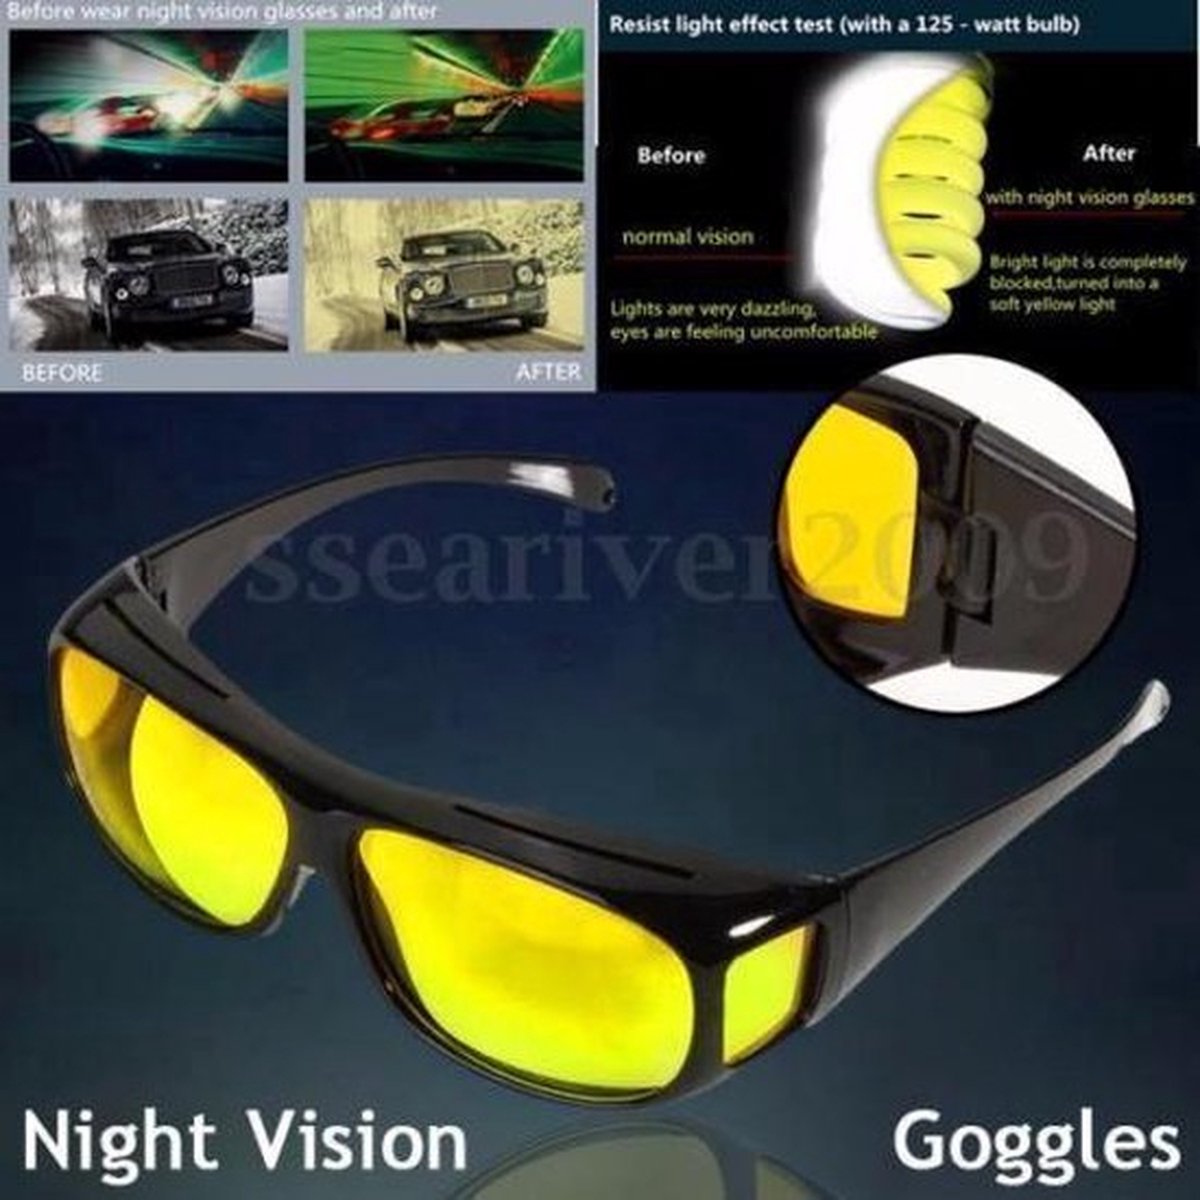 Synx Tools Nachtbril Du Luxe Nachtvisie - Veilig rijden - Auto Bril - Gele bril voor autorijden - Betere zicht - Safety